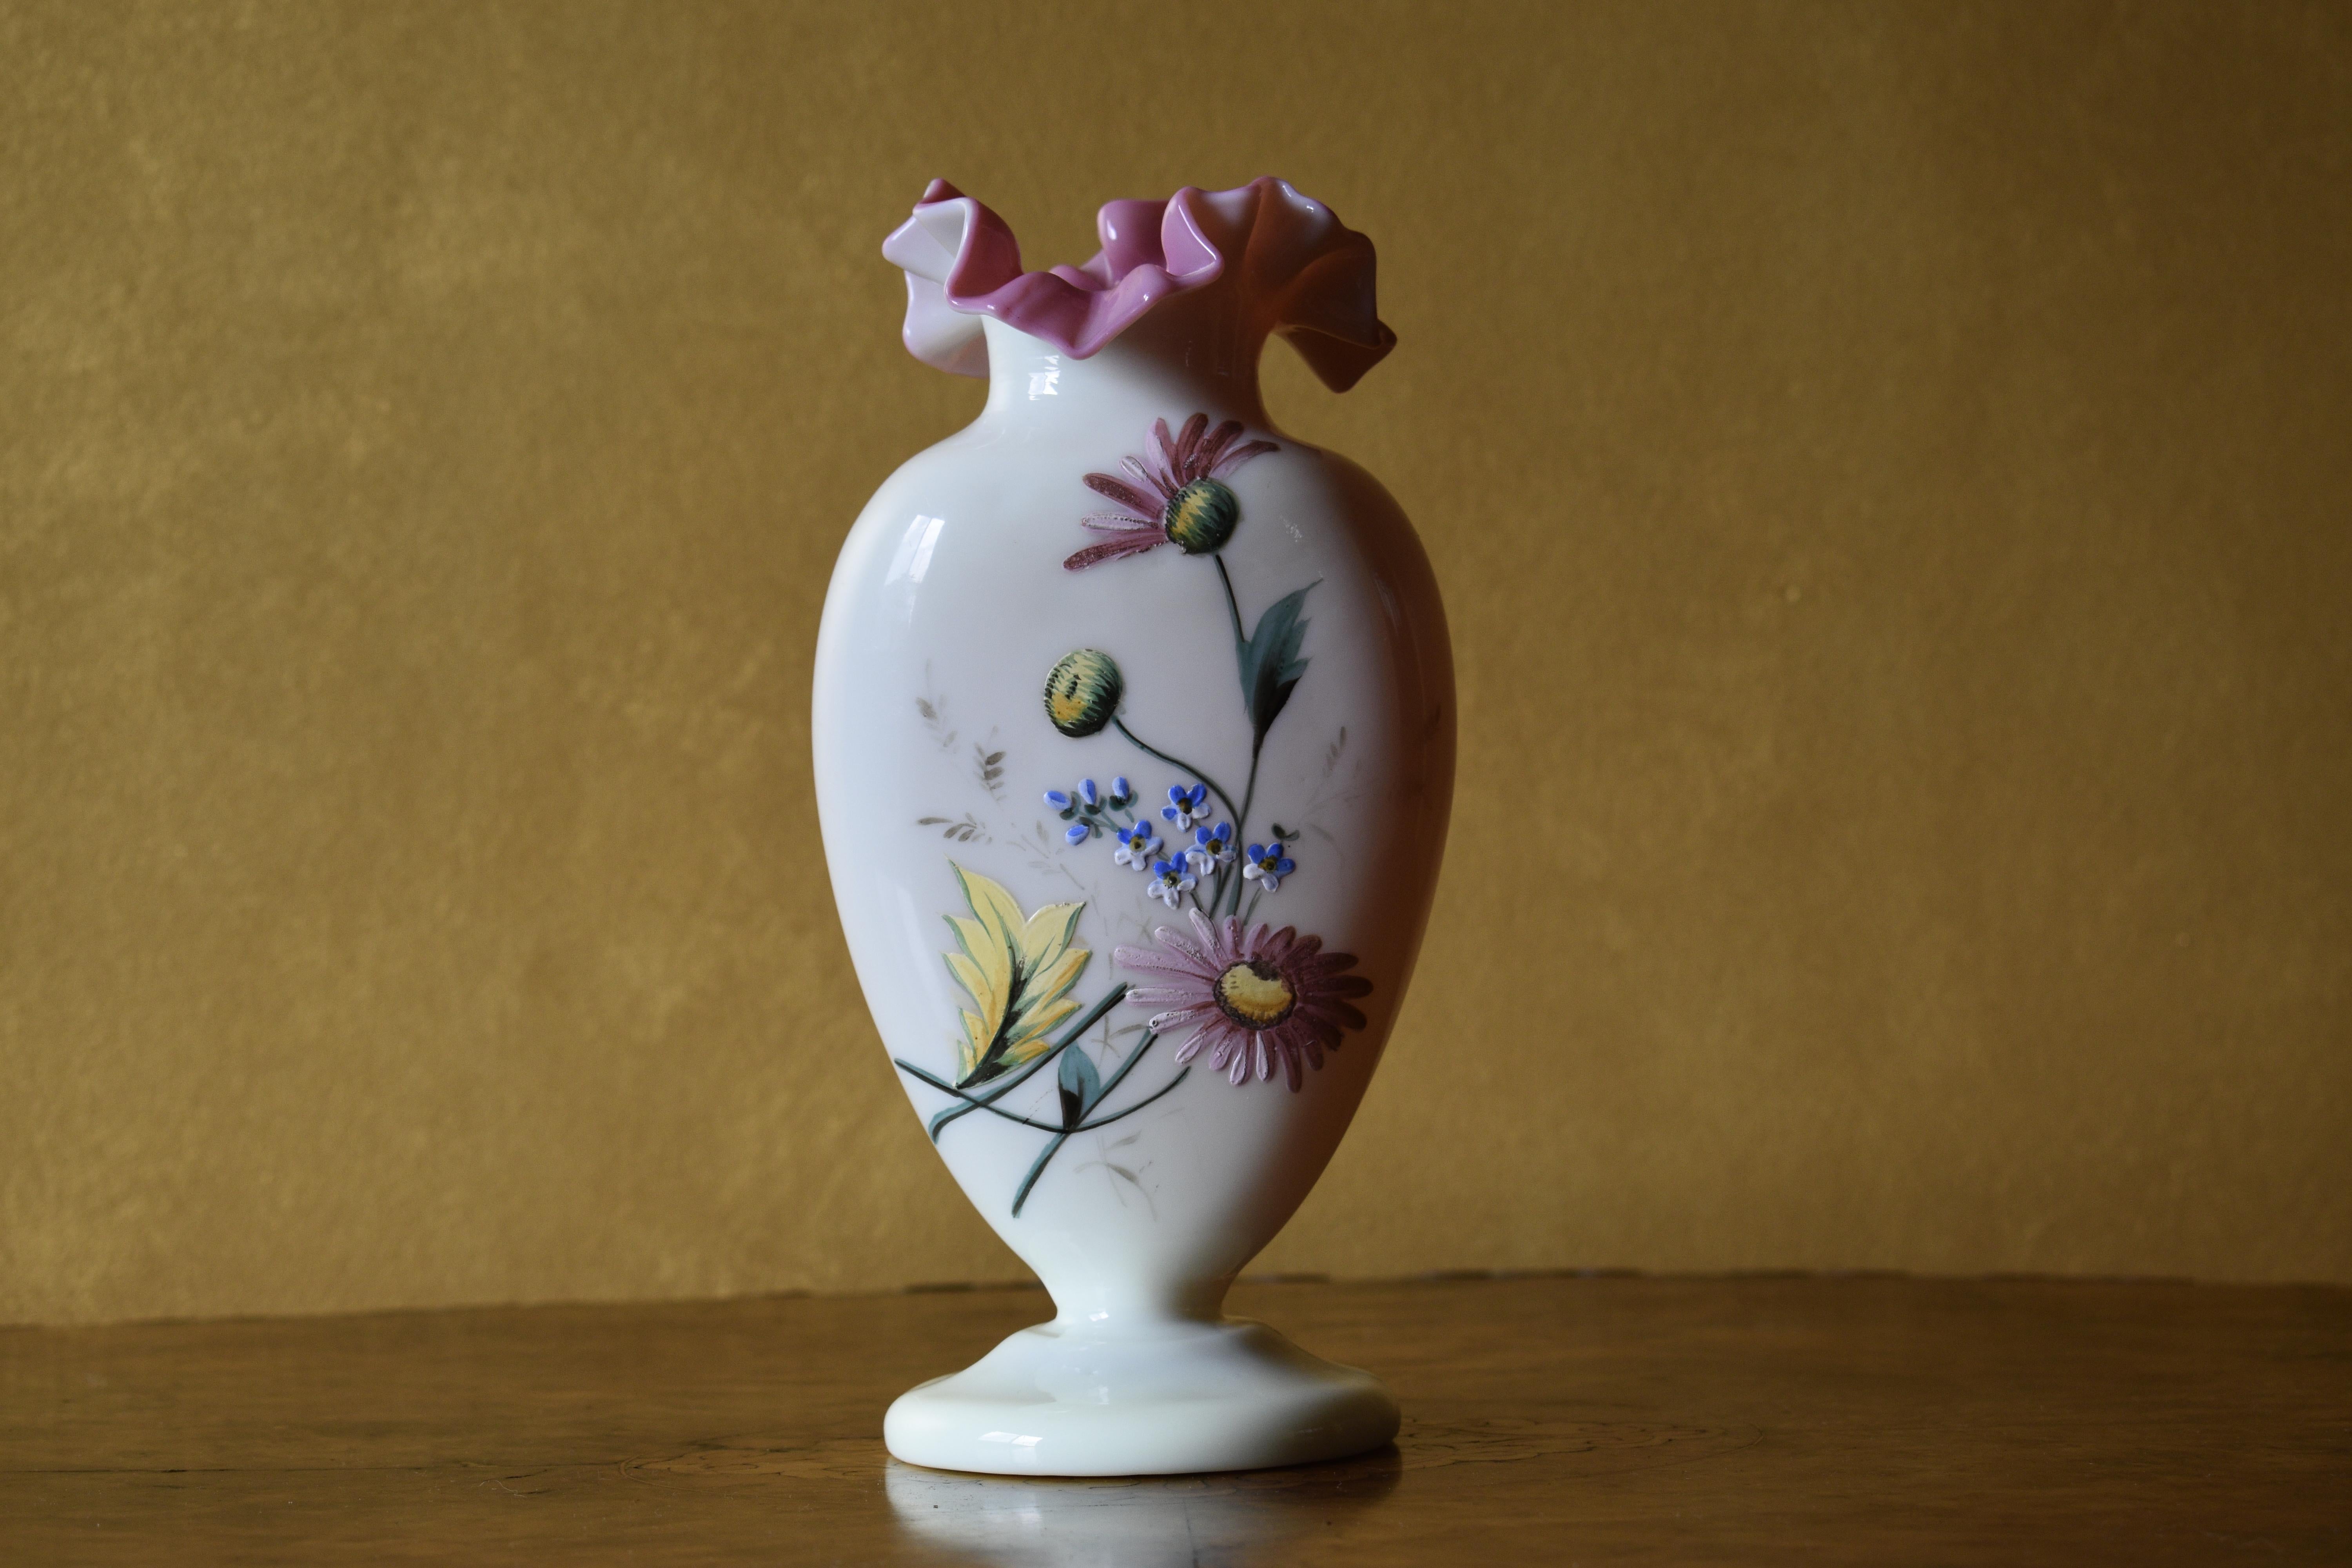 Vase en verre avec des décorations florales peintes à la main et un bord frangé rose

Circa:1880

Matériau : Verre

Dimensions : 12 cm de haut, base 9,5 cm

Envoi par Australia Post avec suivi. 